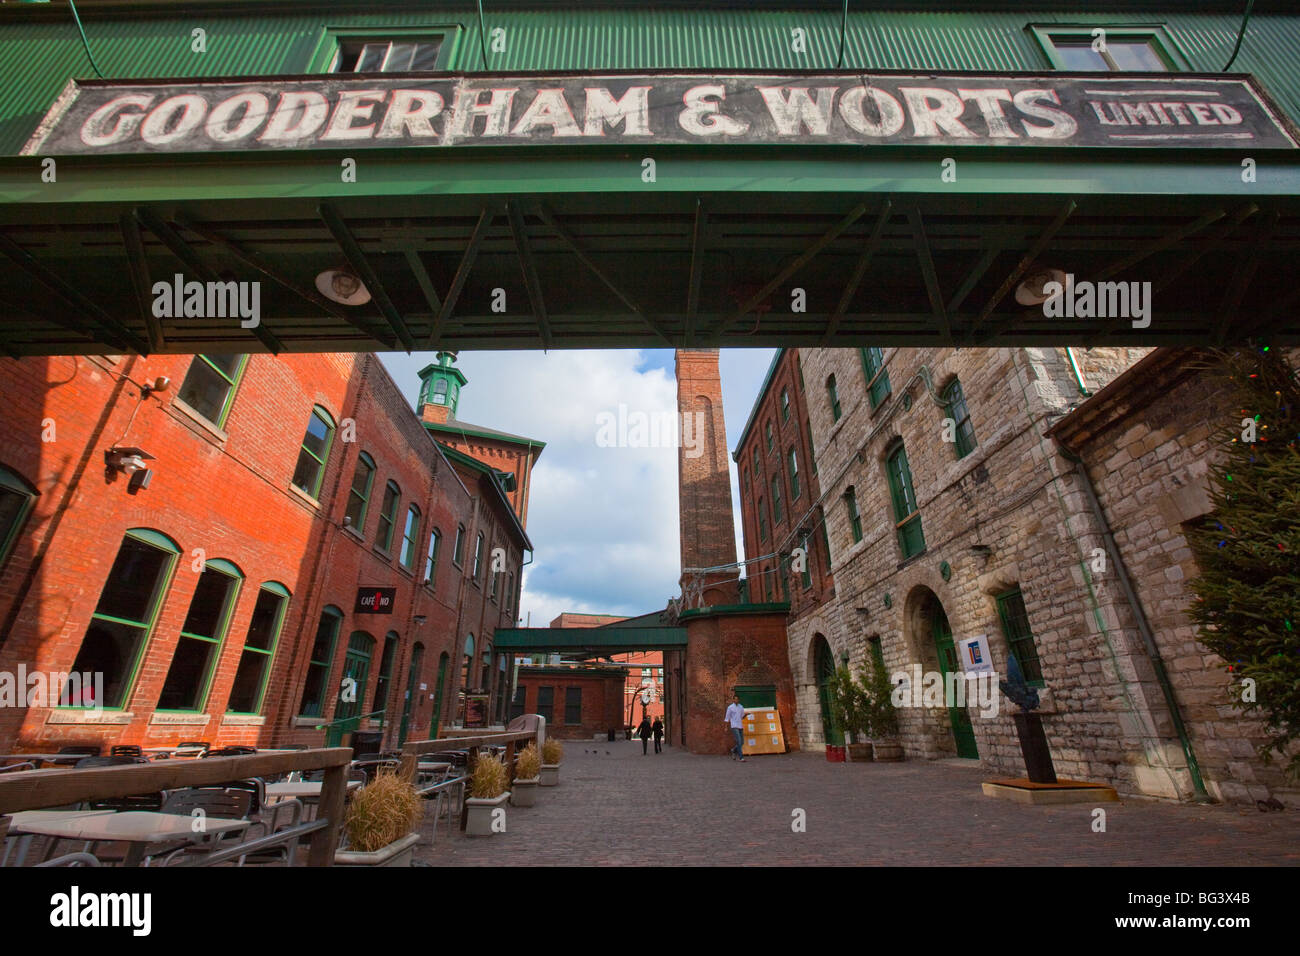 Gooderham und Würze Distillery District in Toronto Kanada Stockfoto